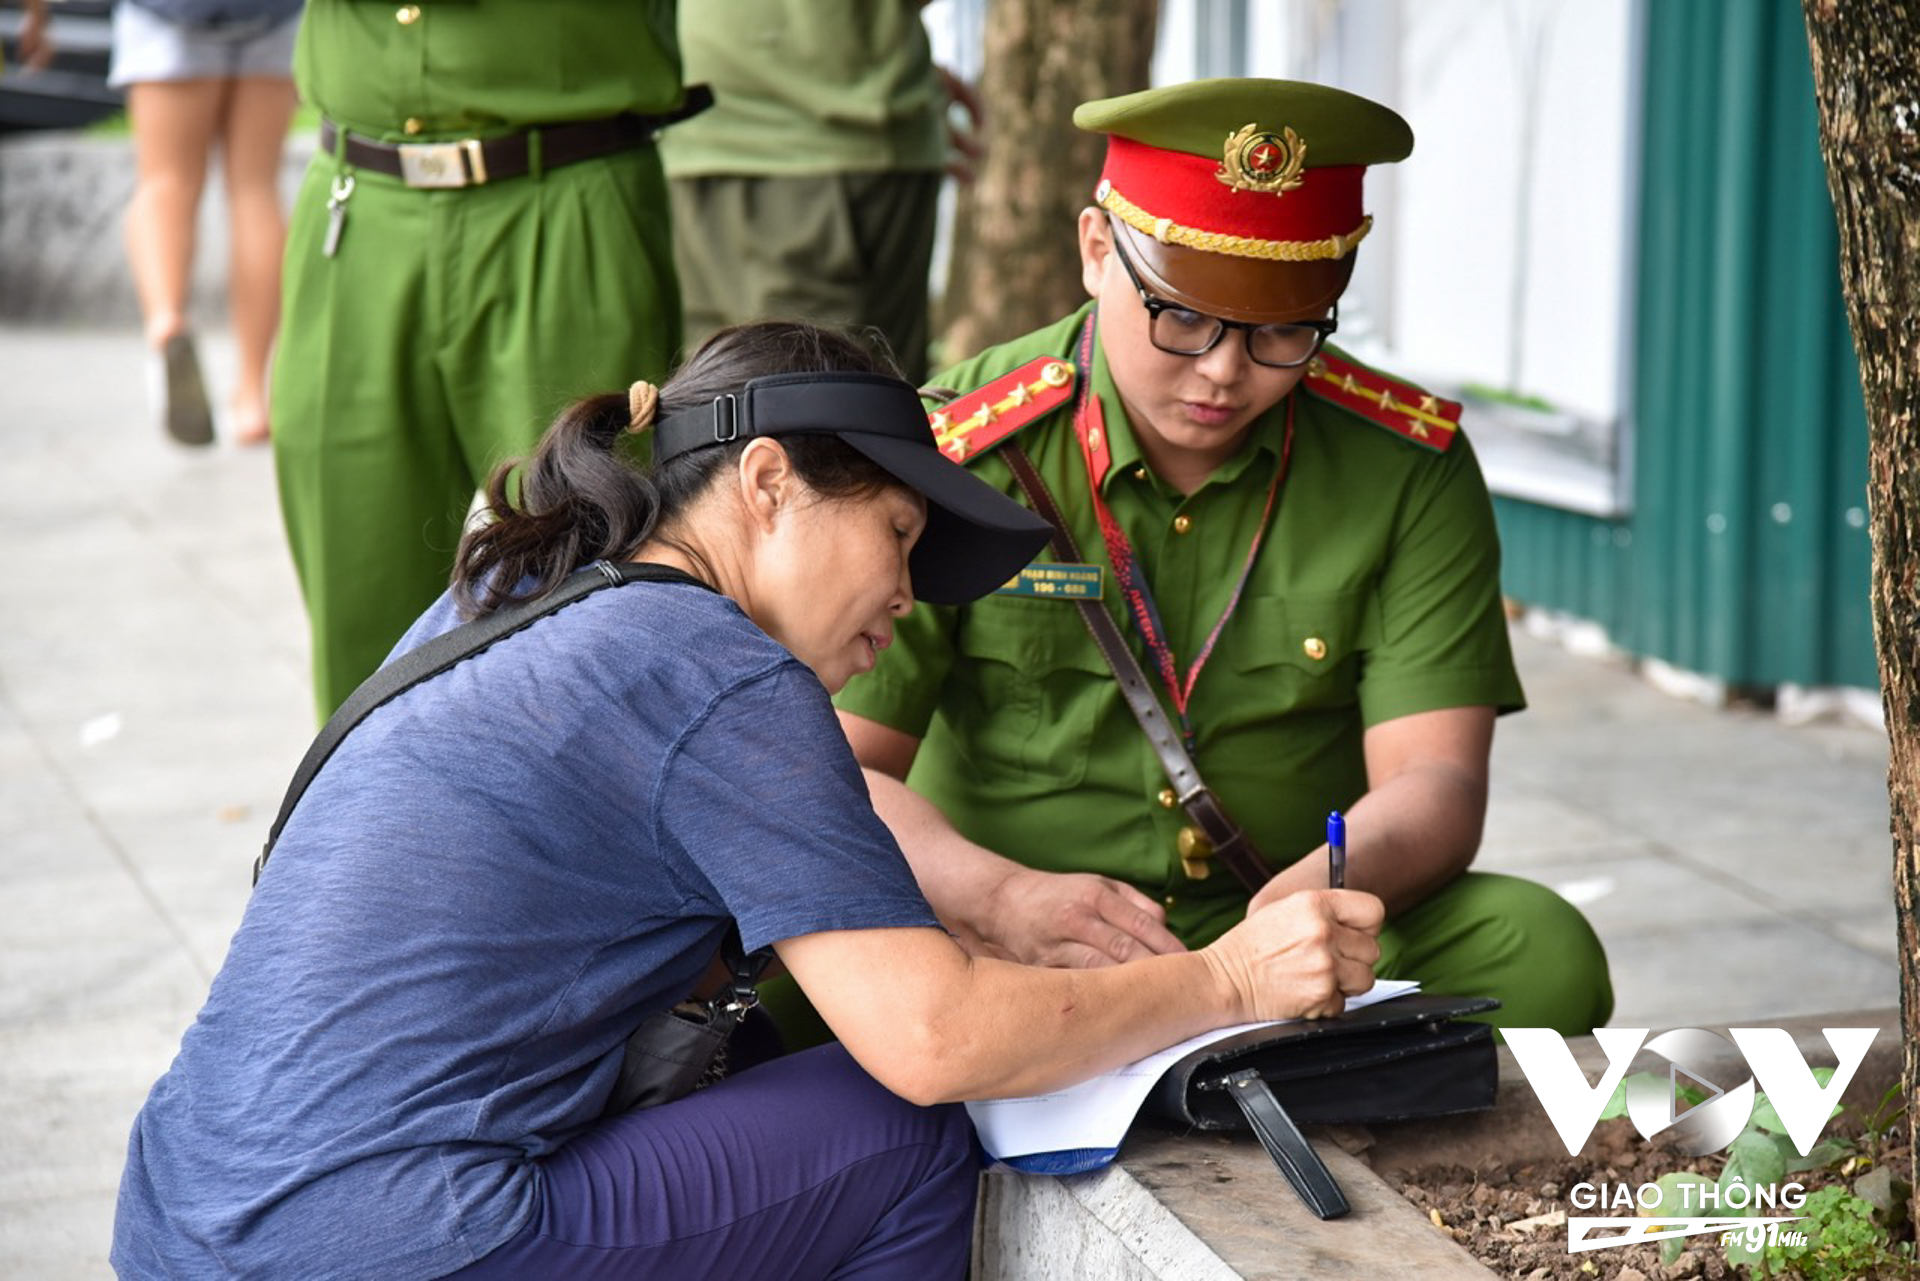 Một quán nước tại khu vực hồ Hoàn Kiếm lấn chiếm vỉa hè cũng được lực lượng chức năng nhắc nhở, yêu cầu ký cam kết không tái diễn vi phạm.